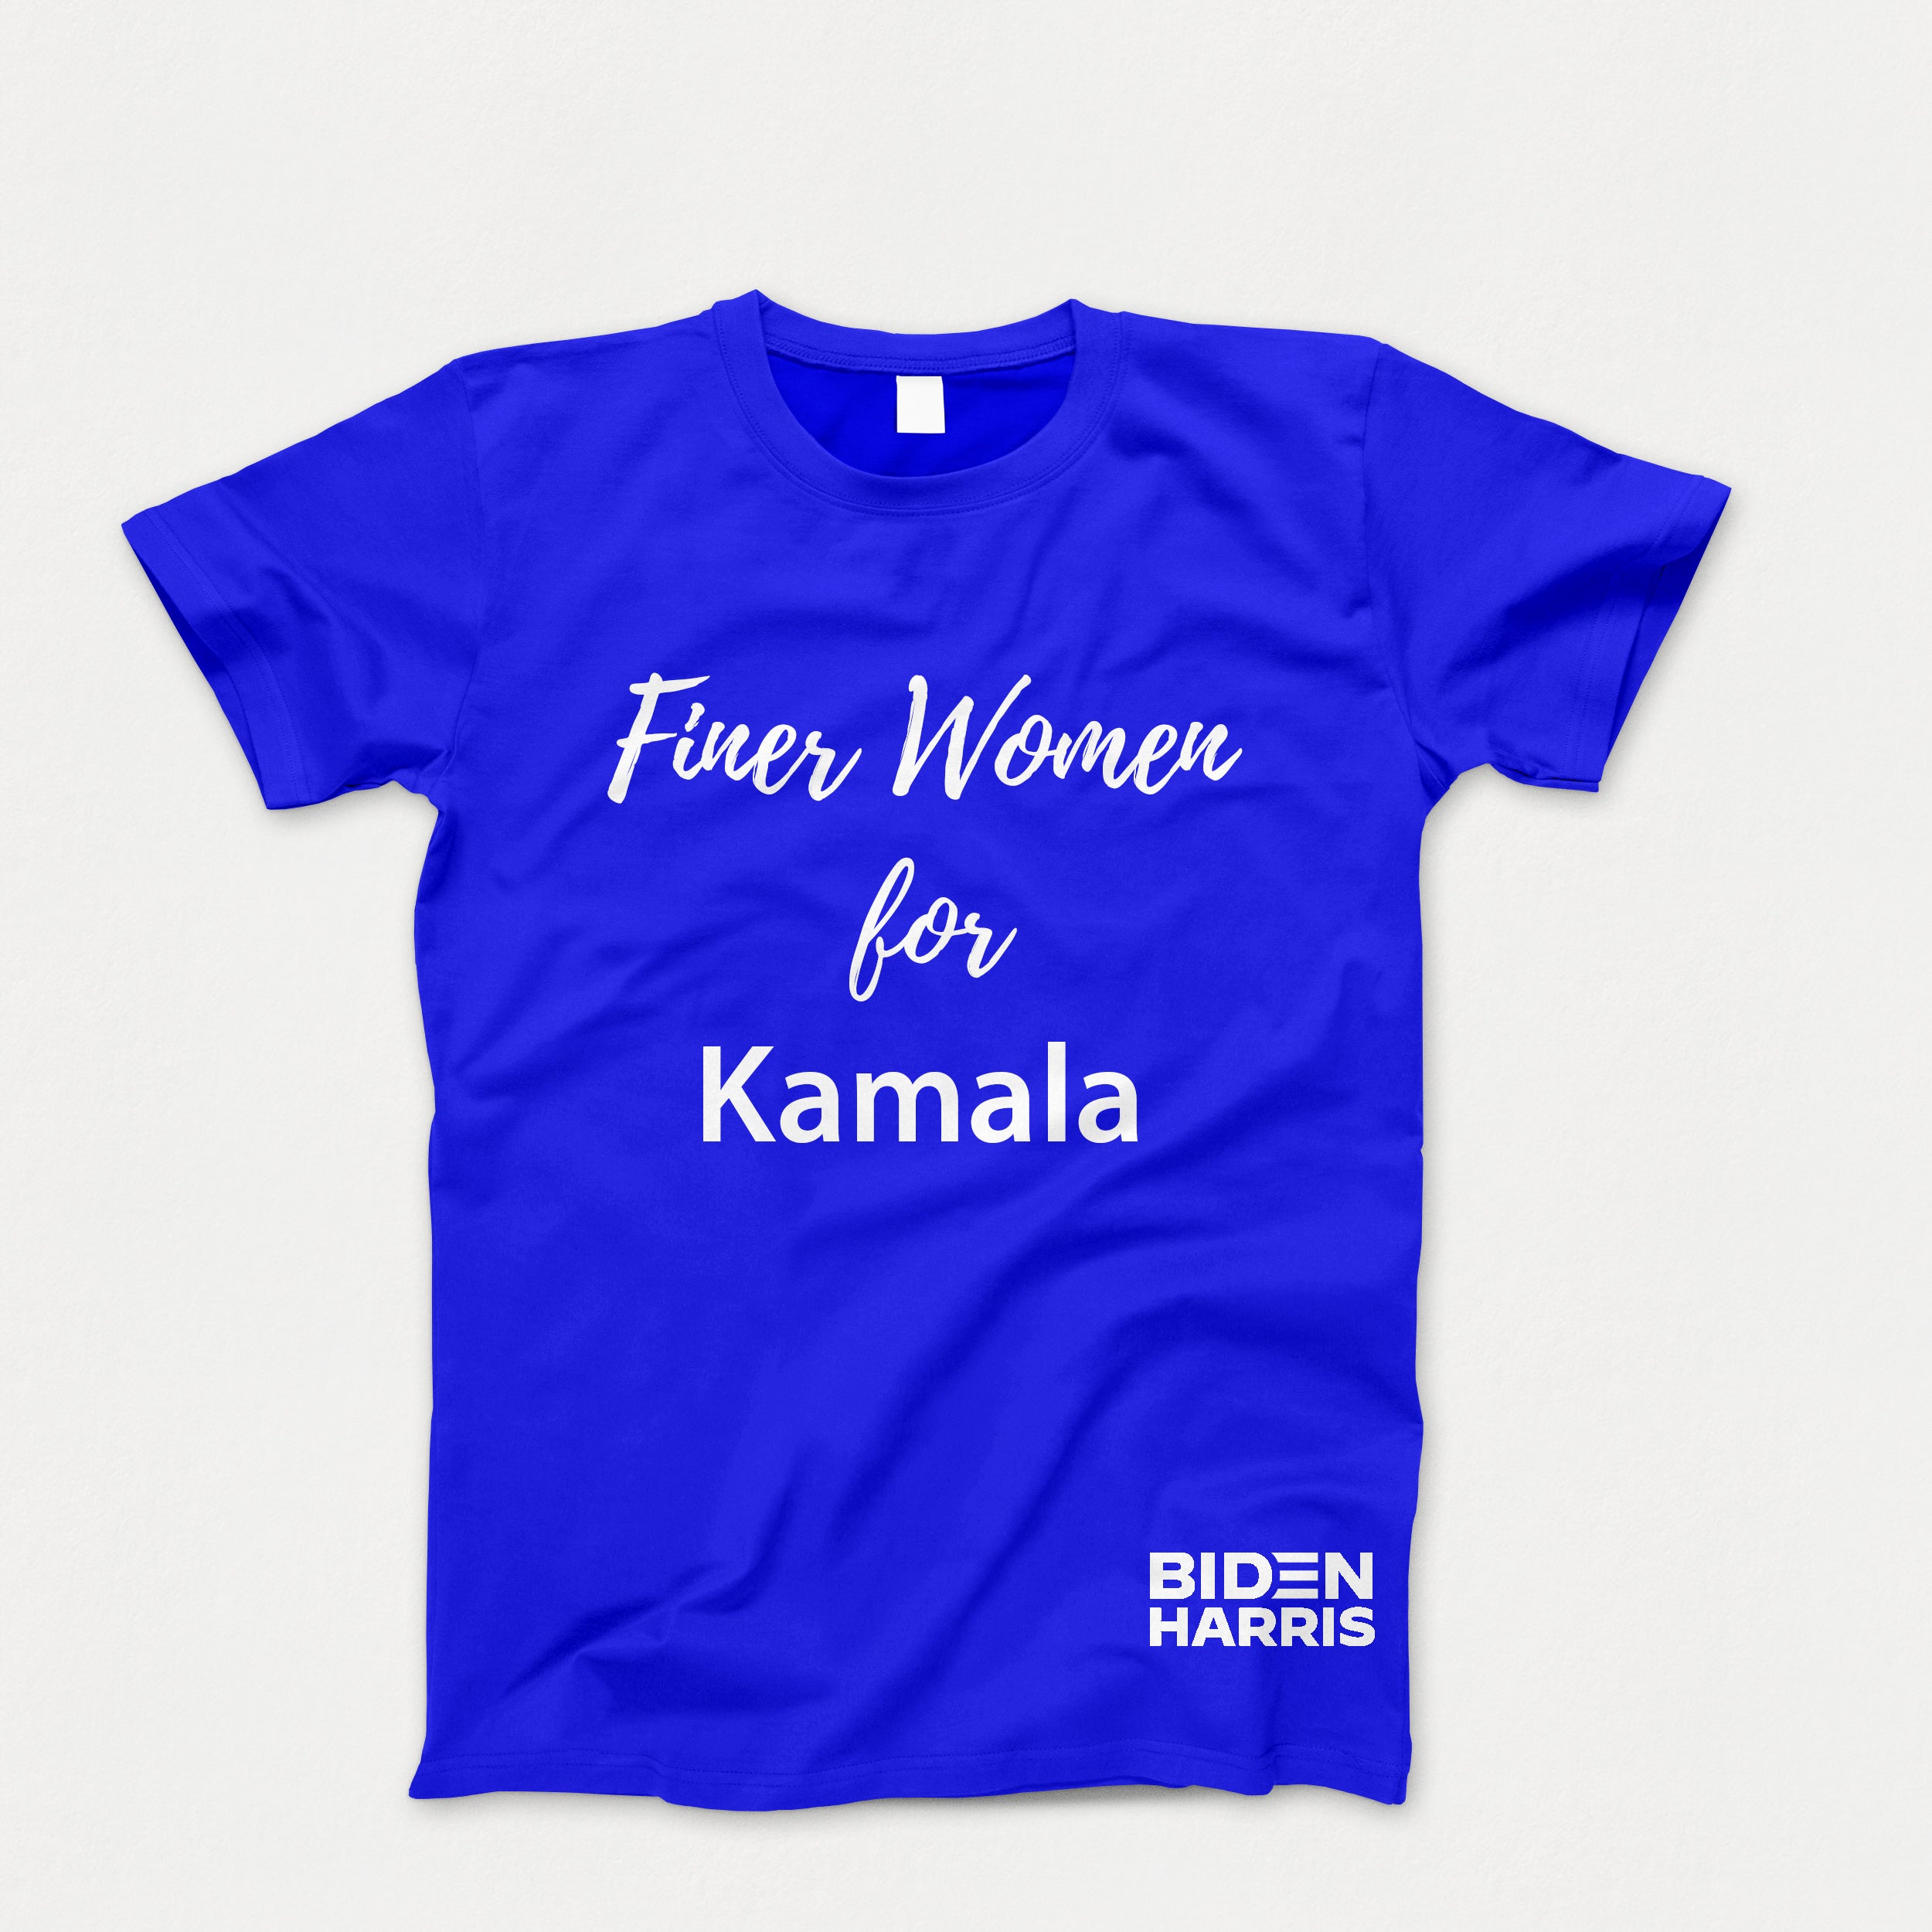 Finer Women For Kamala